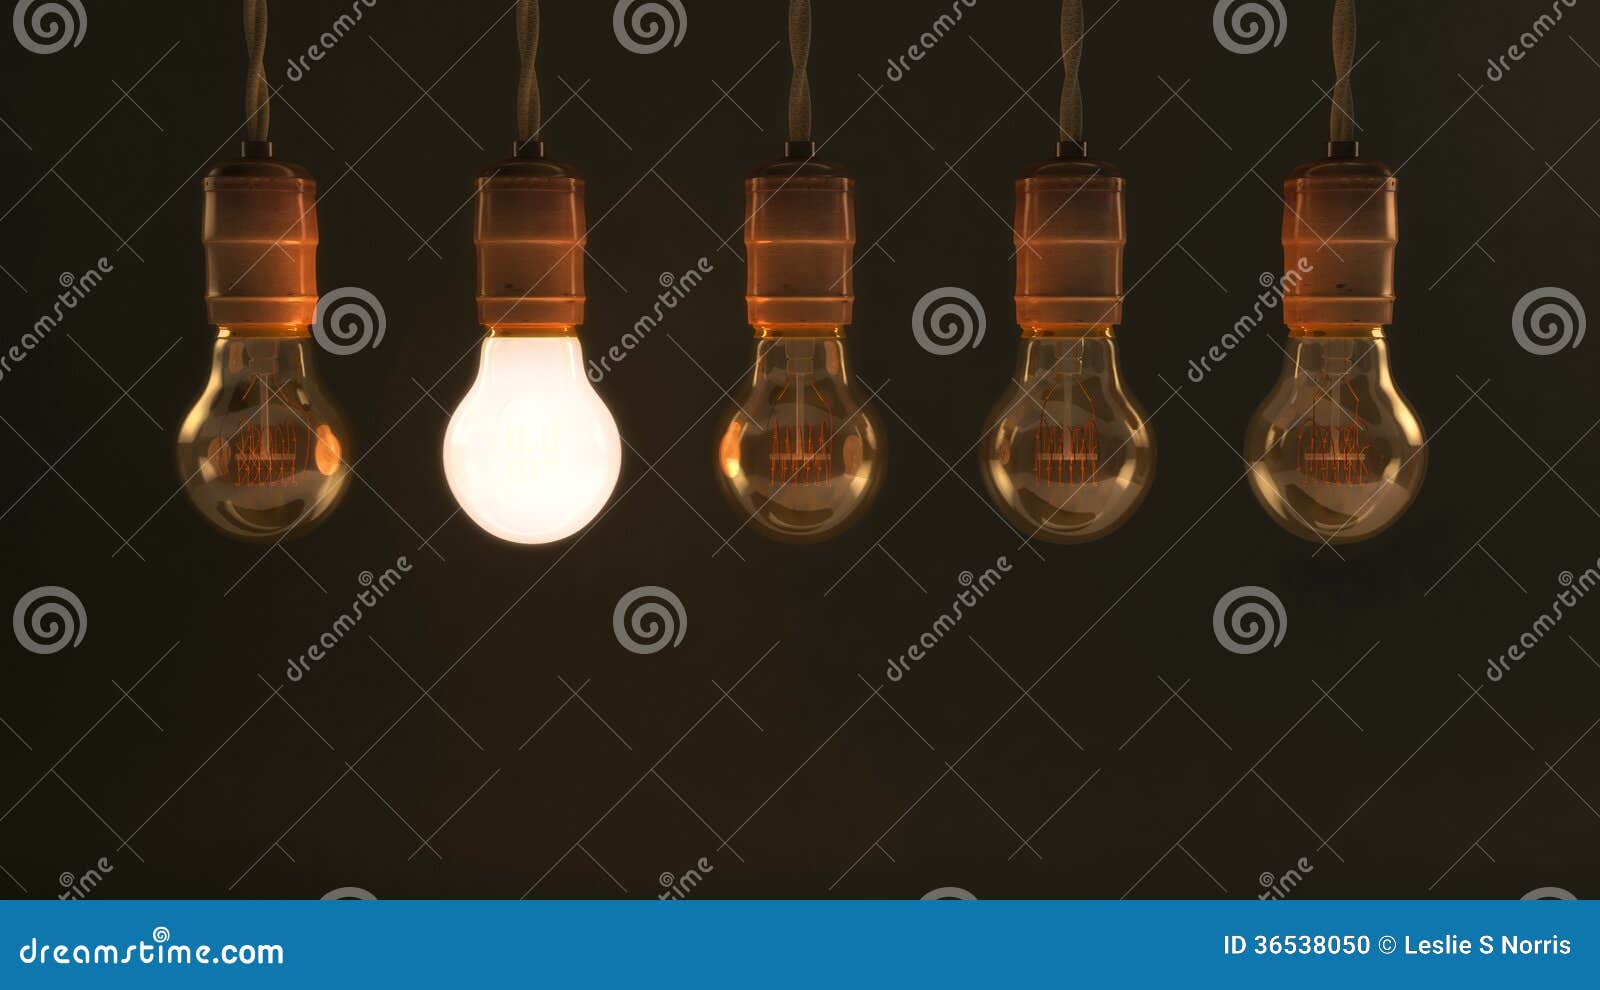 five hanging vintage incandescent light bulbs